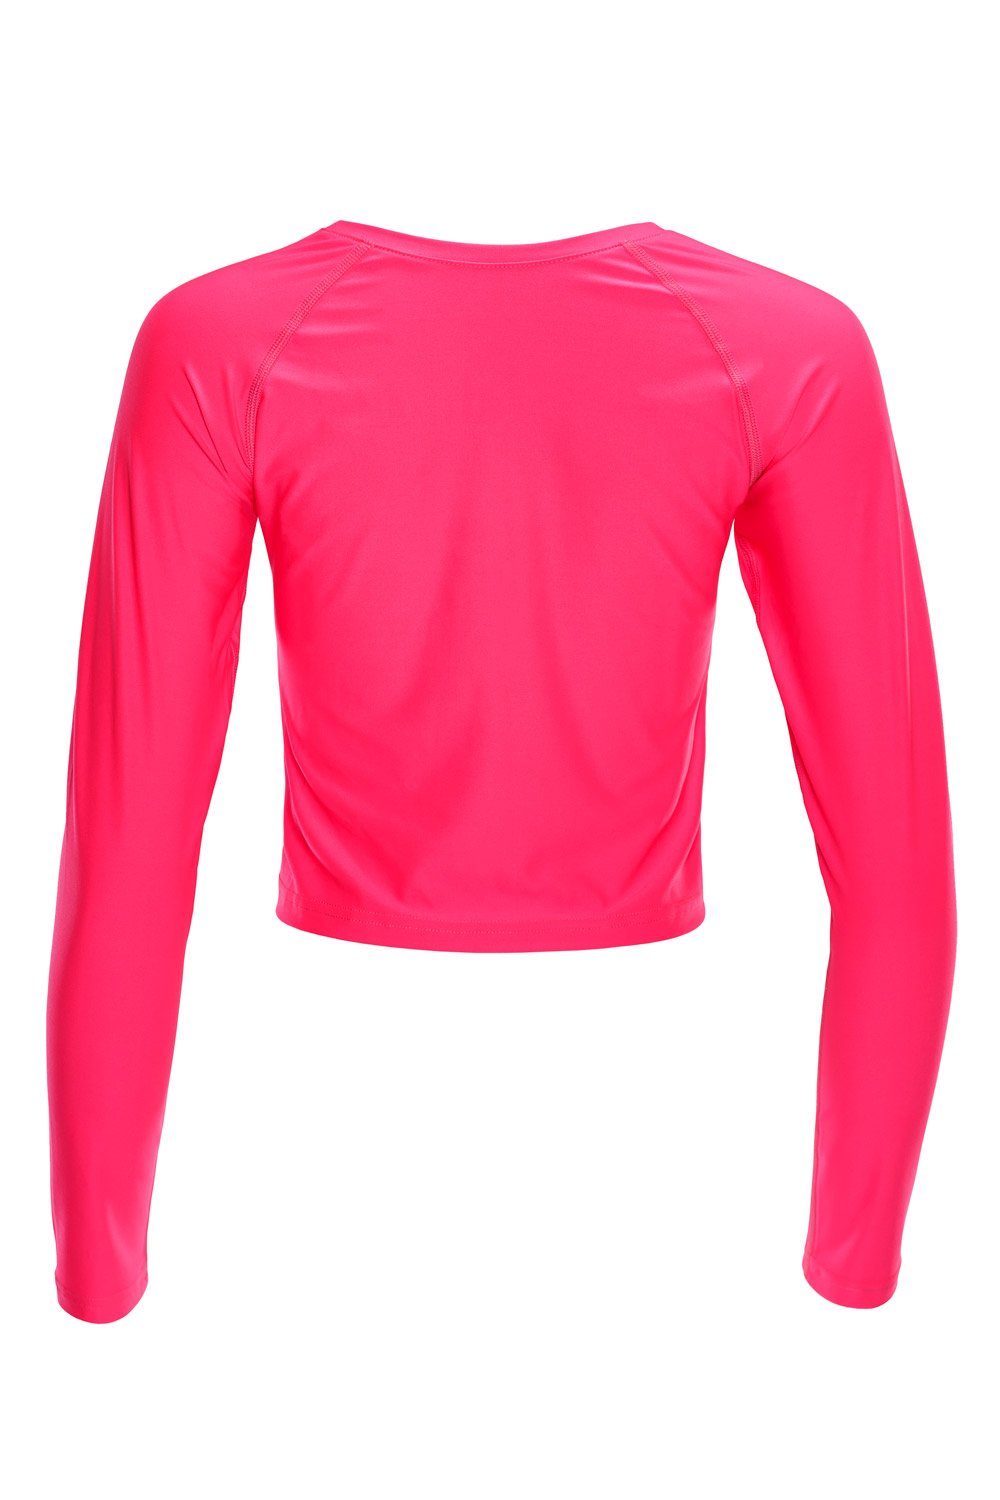 pink Langarmshirt Cropped AET116 Winshape Functional Light neon